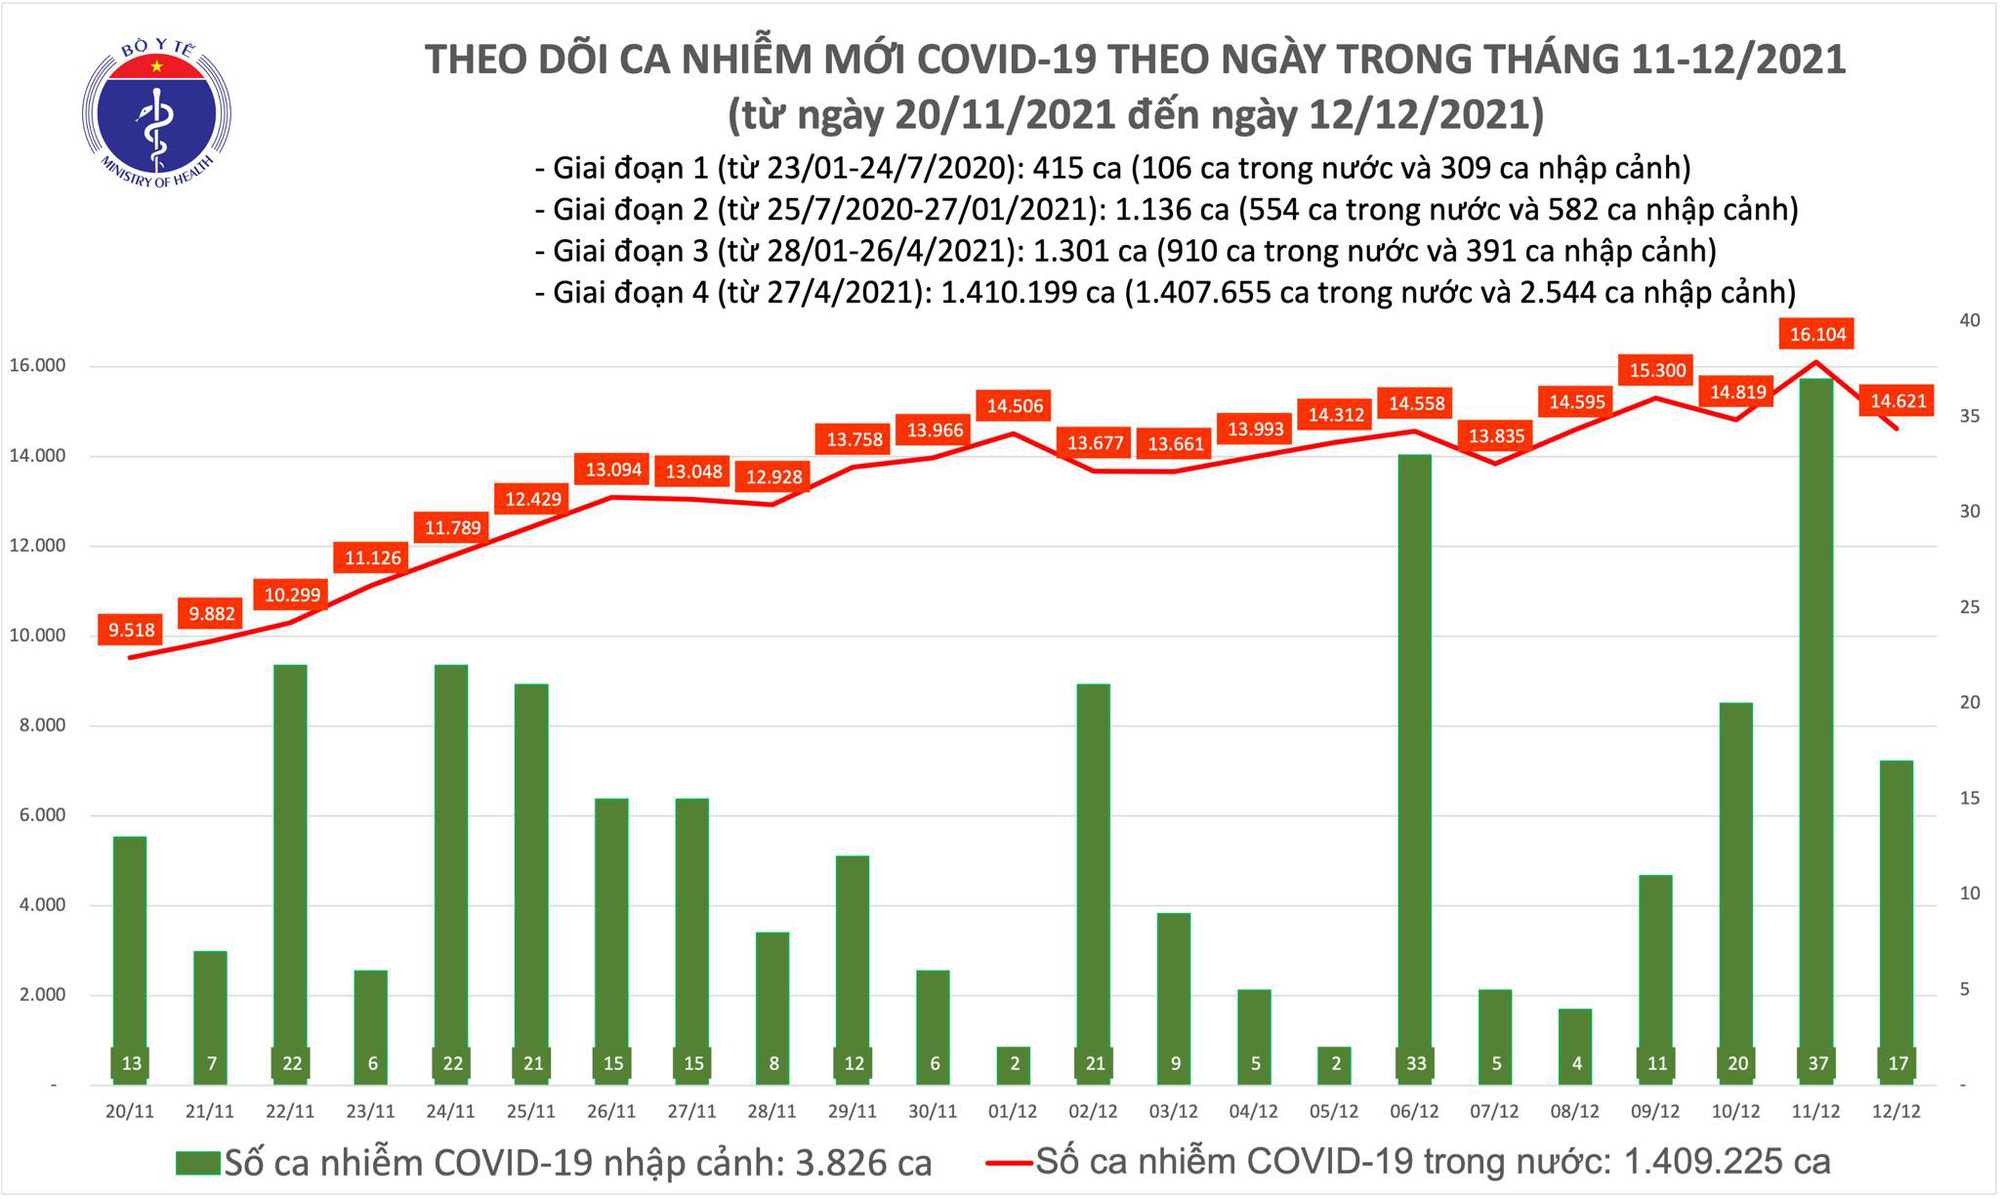 Ngày 12/12: Có 14.638 ca mắc COVID-19, Hà Nội tăng kỷ lục chưa từng có với 980 ca - Ảnh 1.